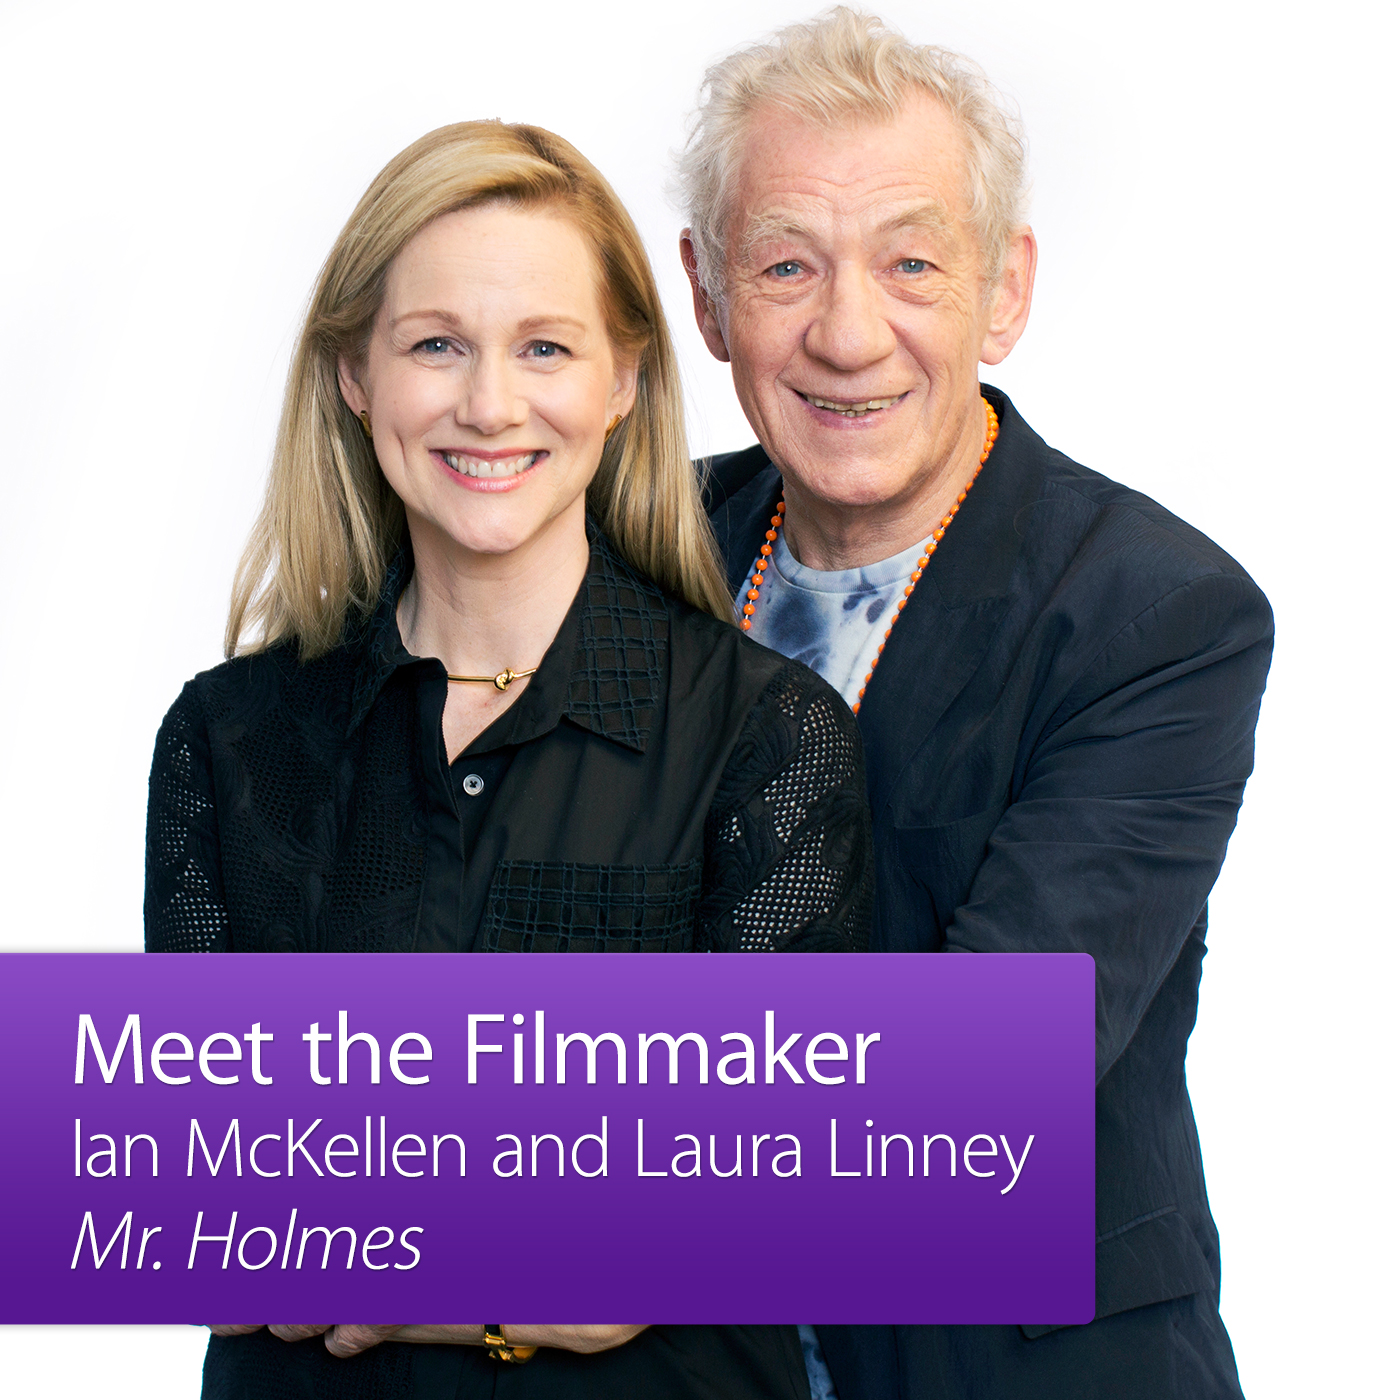 Mr. Holmes: Meet the Filmmaker